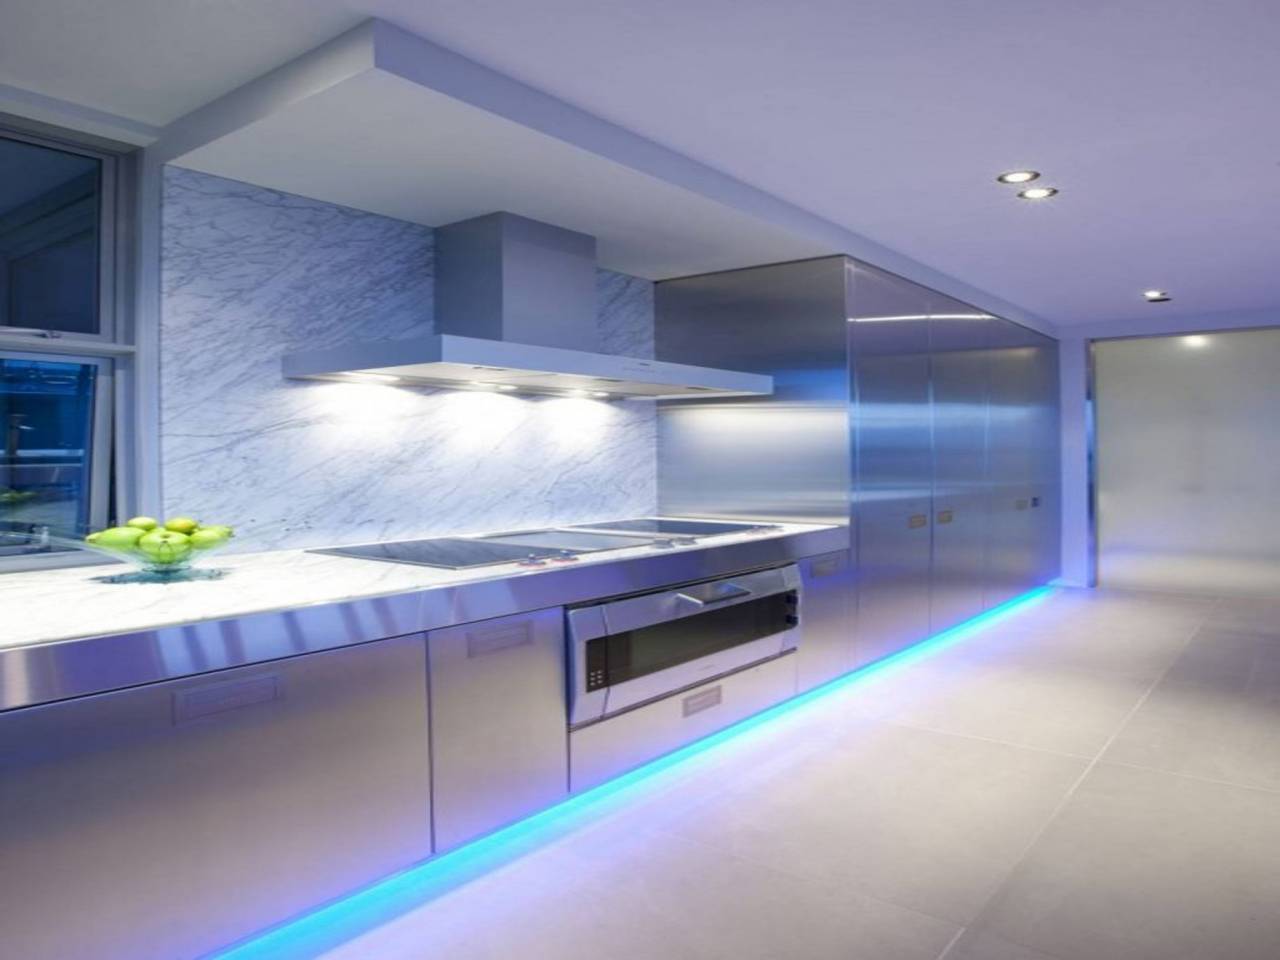 Подсветка для кухни под шкафы: какую выбрать, как сделать светодиодной лентой